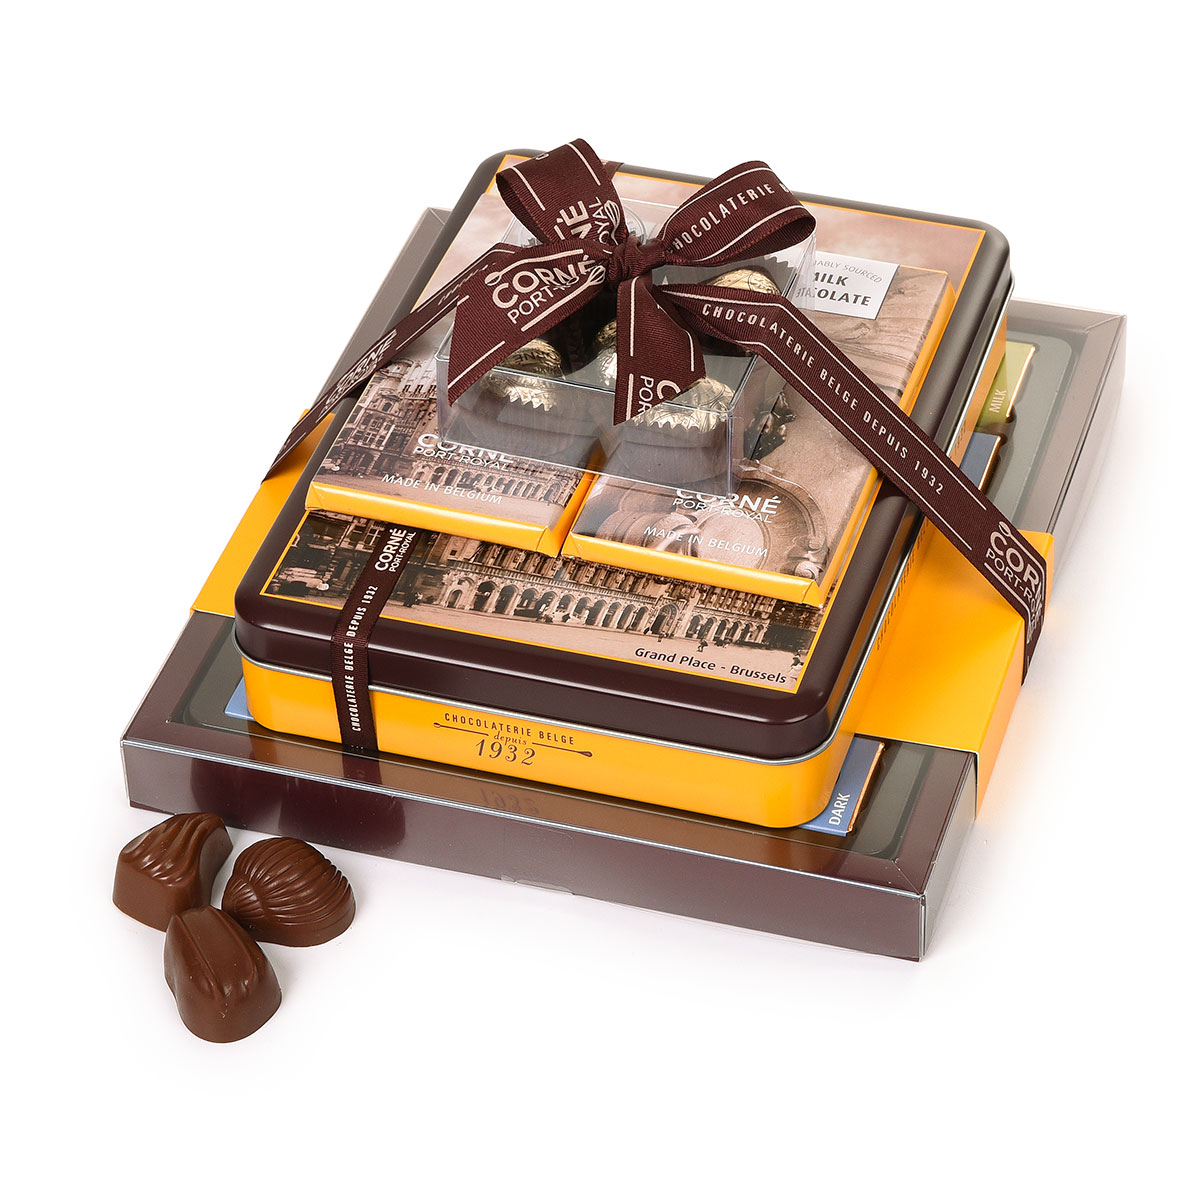 Livraison chocolat belgique - Livraison de cadeau en belgique